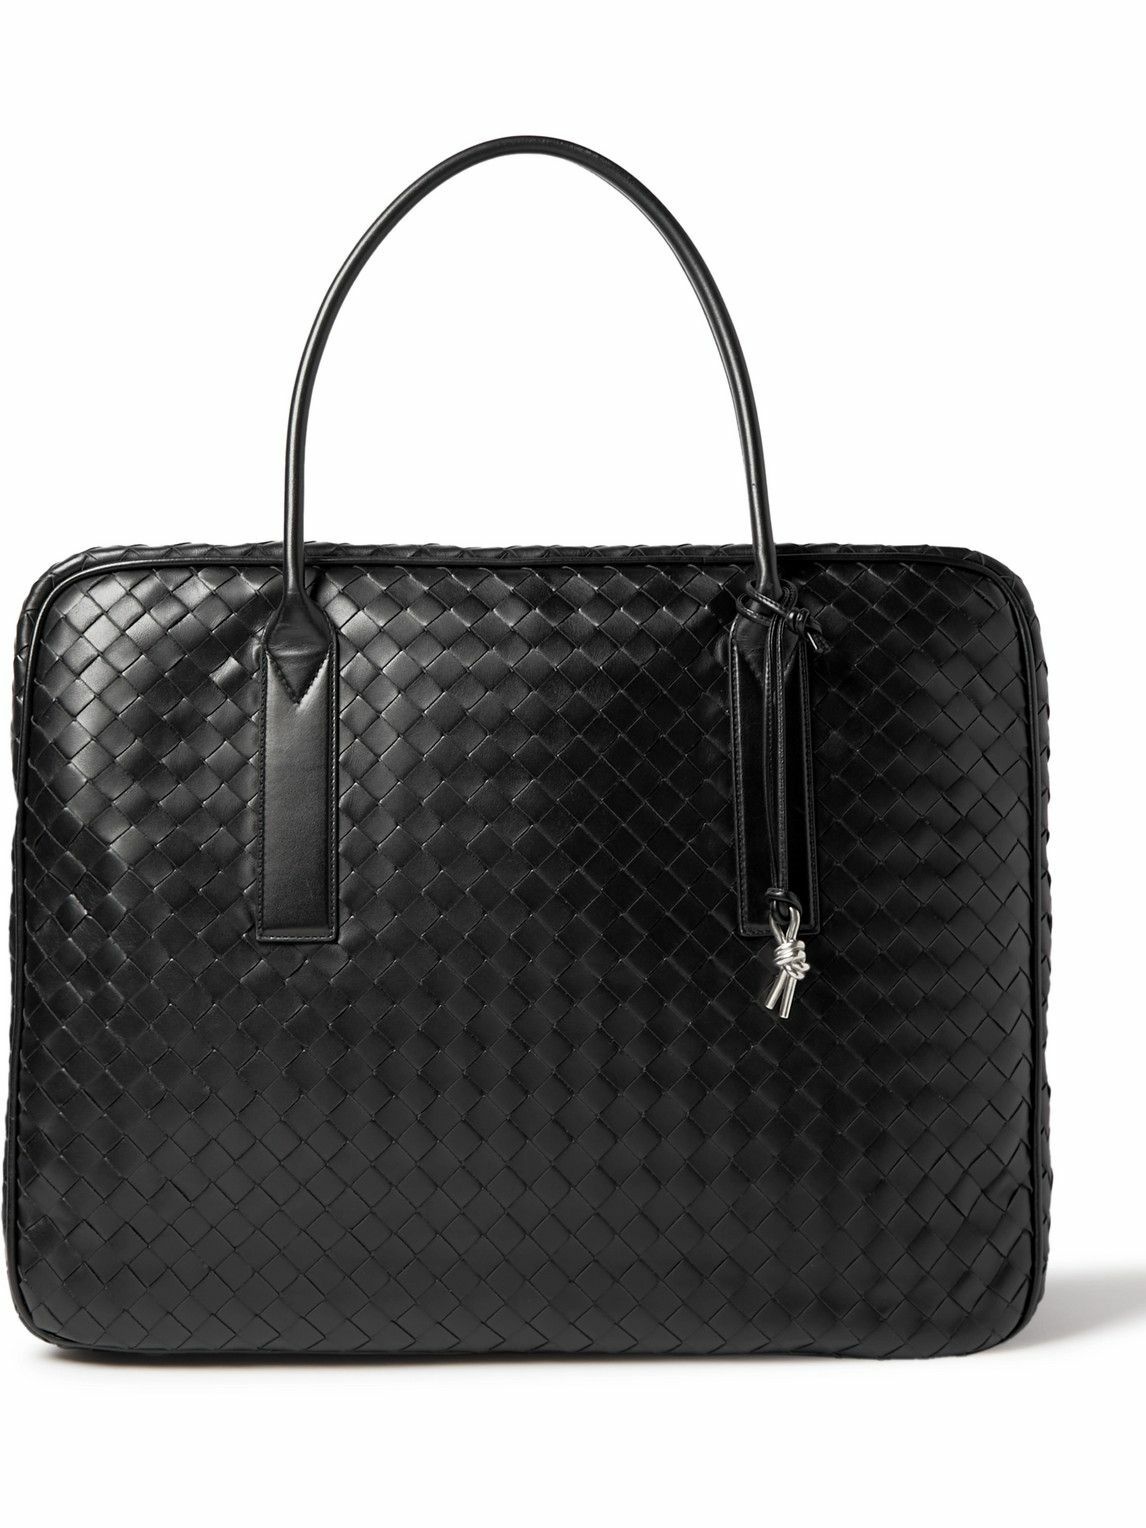 Photo: Bottega Veneta - Intrecciato Large Embellished Leather Briefcase